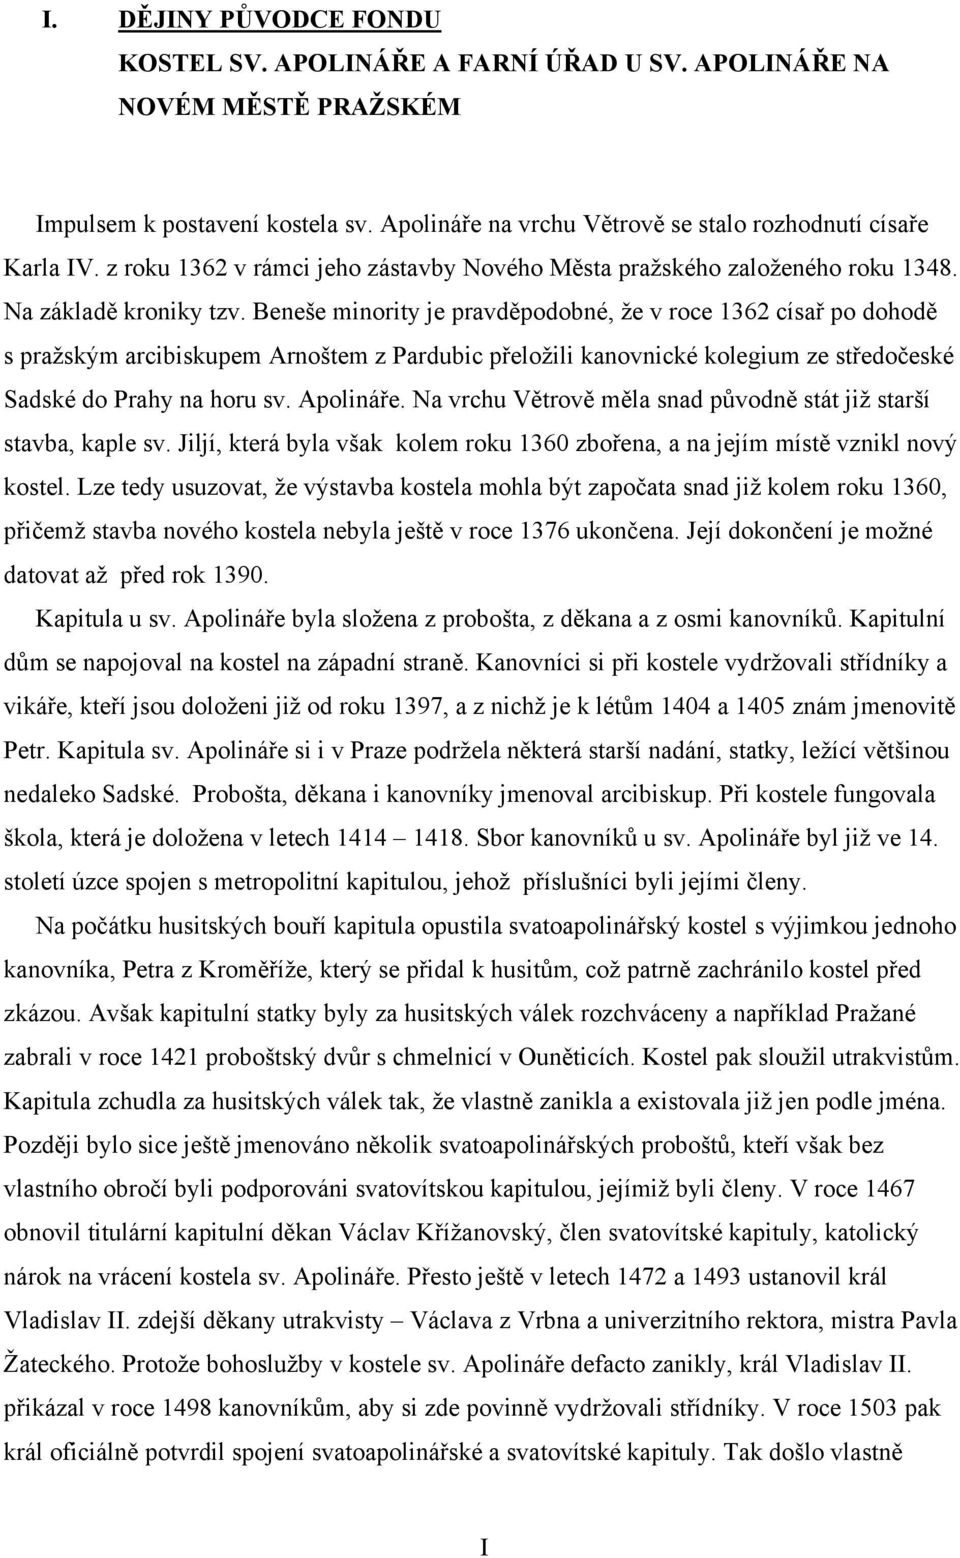 Beneše minority je pravděpodobné, že v roce 1362 císař po dohodě s pražským arcibiskupem Arnoštem z Pardubic přeložili kanovnické kolegium ze středočeské Sadské do Prahy na horu sv. Apolináře.